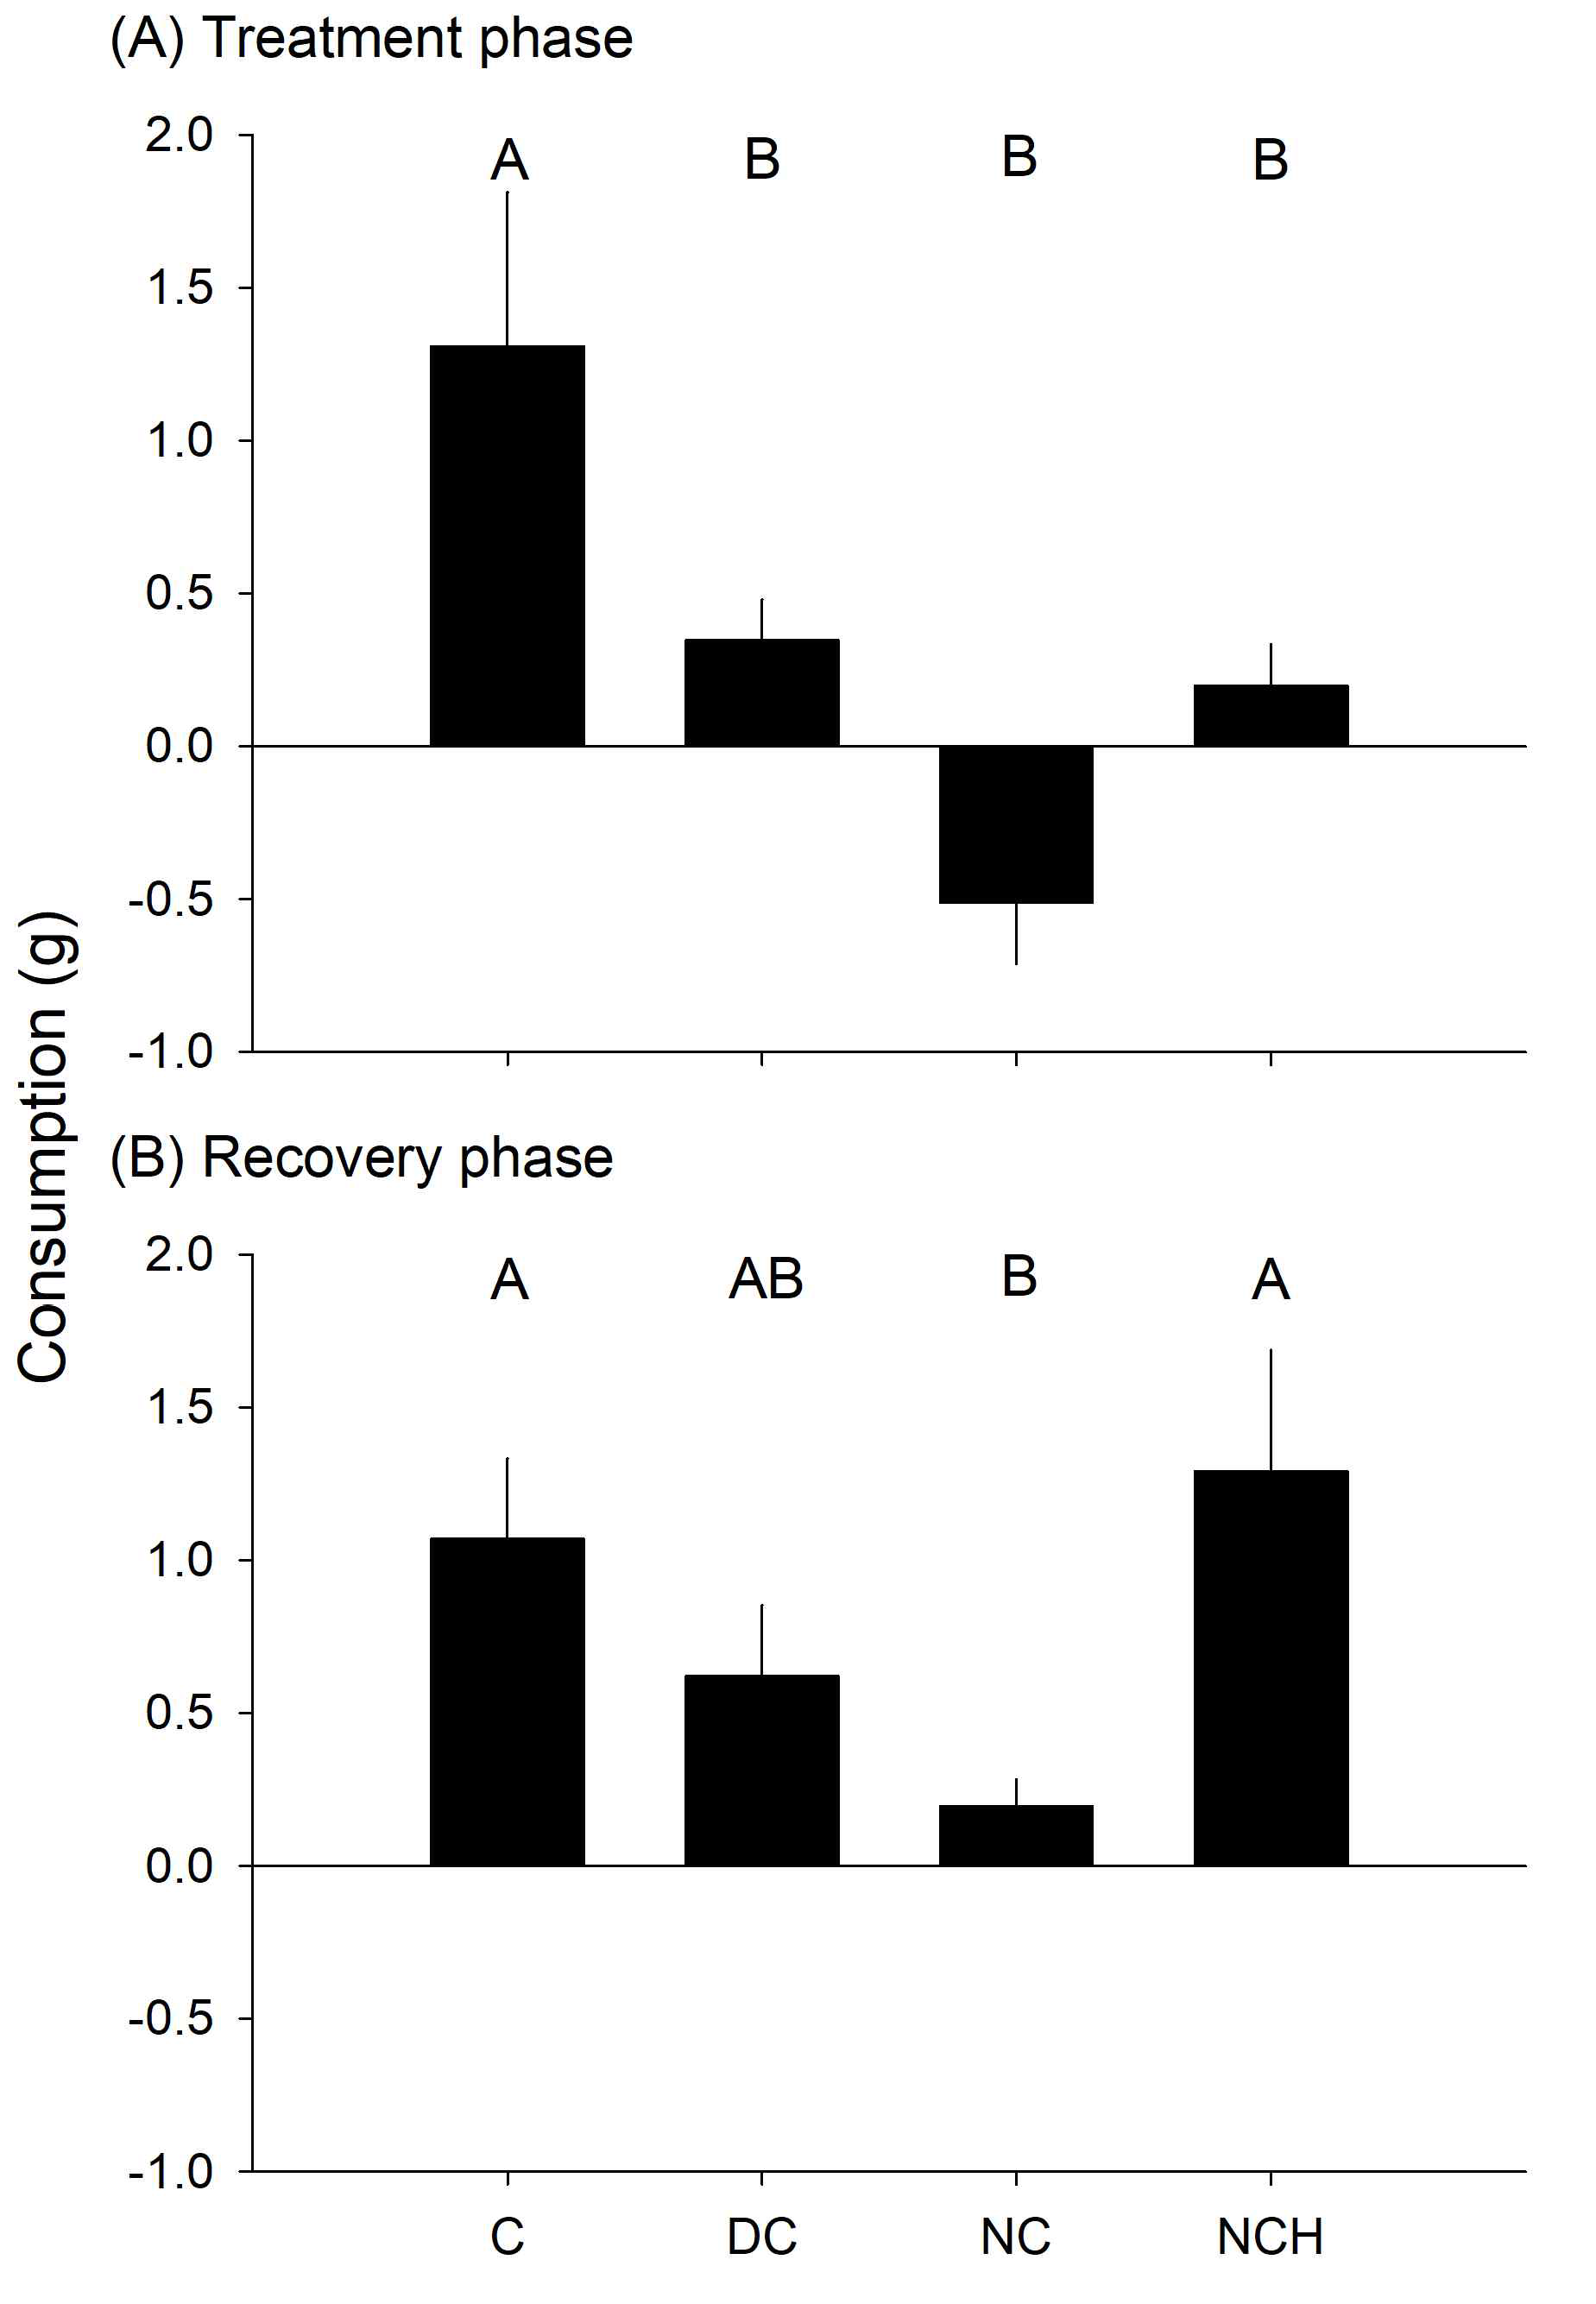 둥근성게의 미역에 대한 treatment phase (A), recovery phase (B)의 평균 섭식량